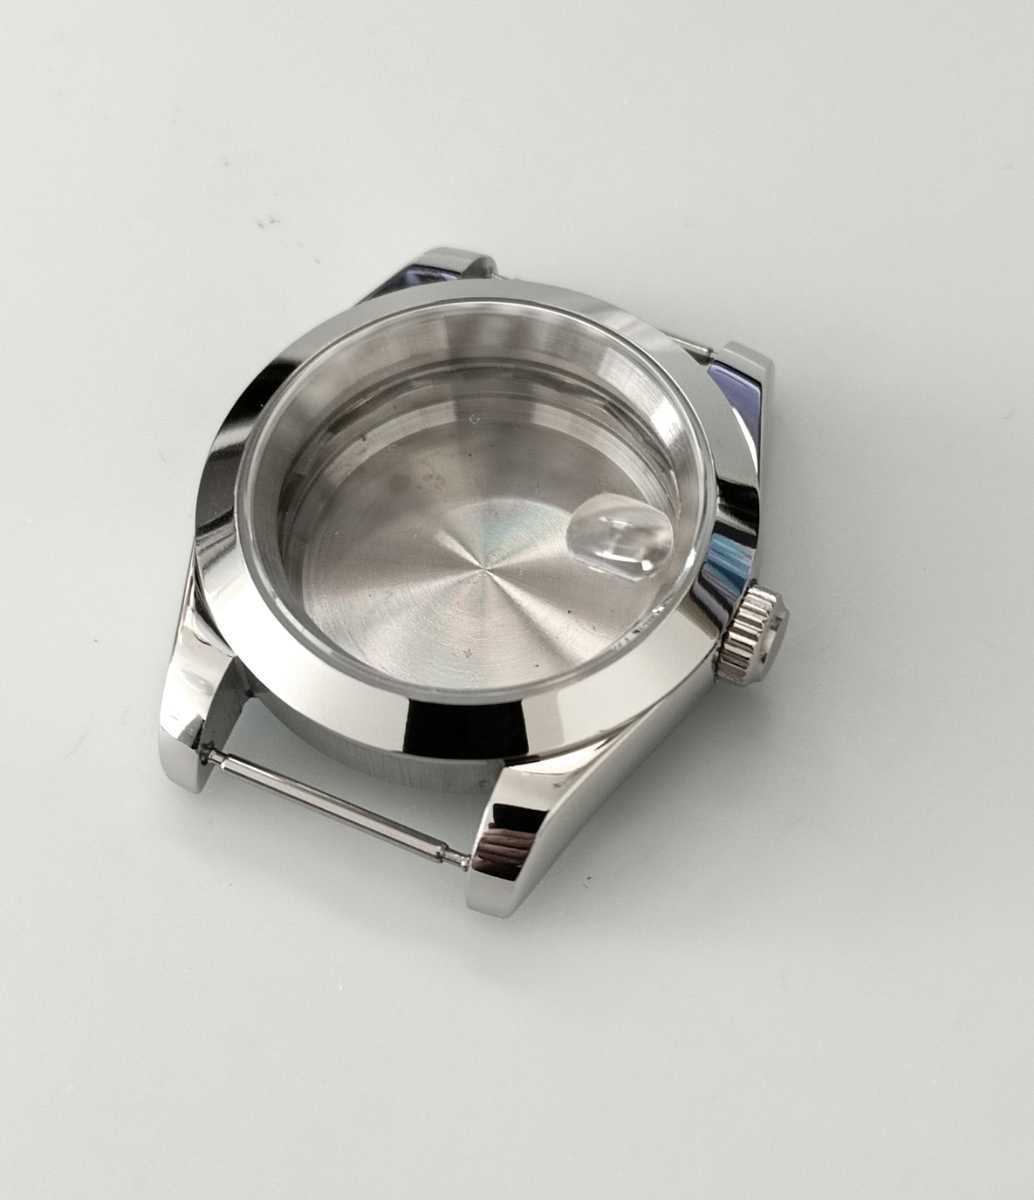 39mm デイト 腕時計 ケース プレーンベゼル【対応ムーブメント】SEIKO NH35/NH36/4R35/4R36 セイコー